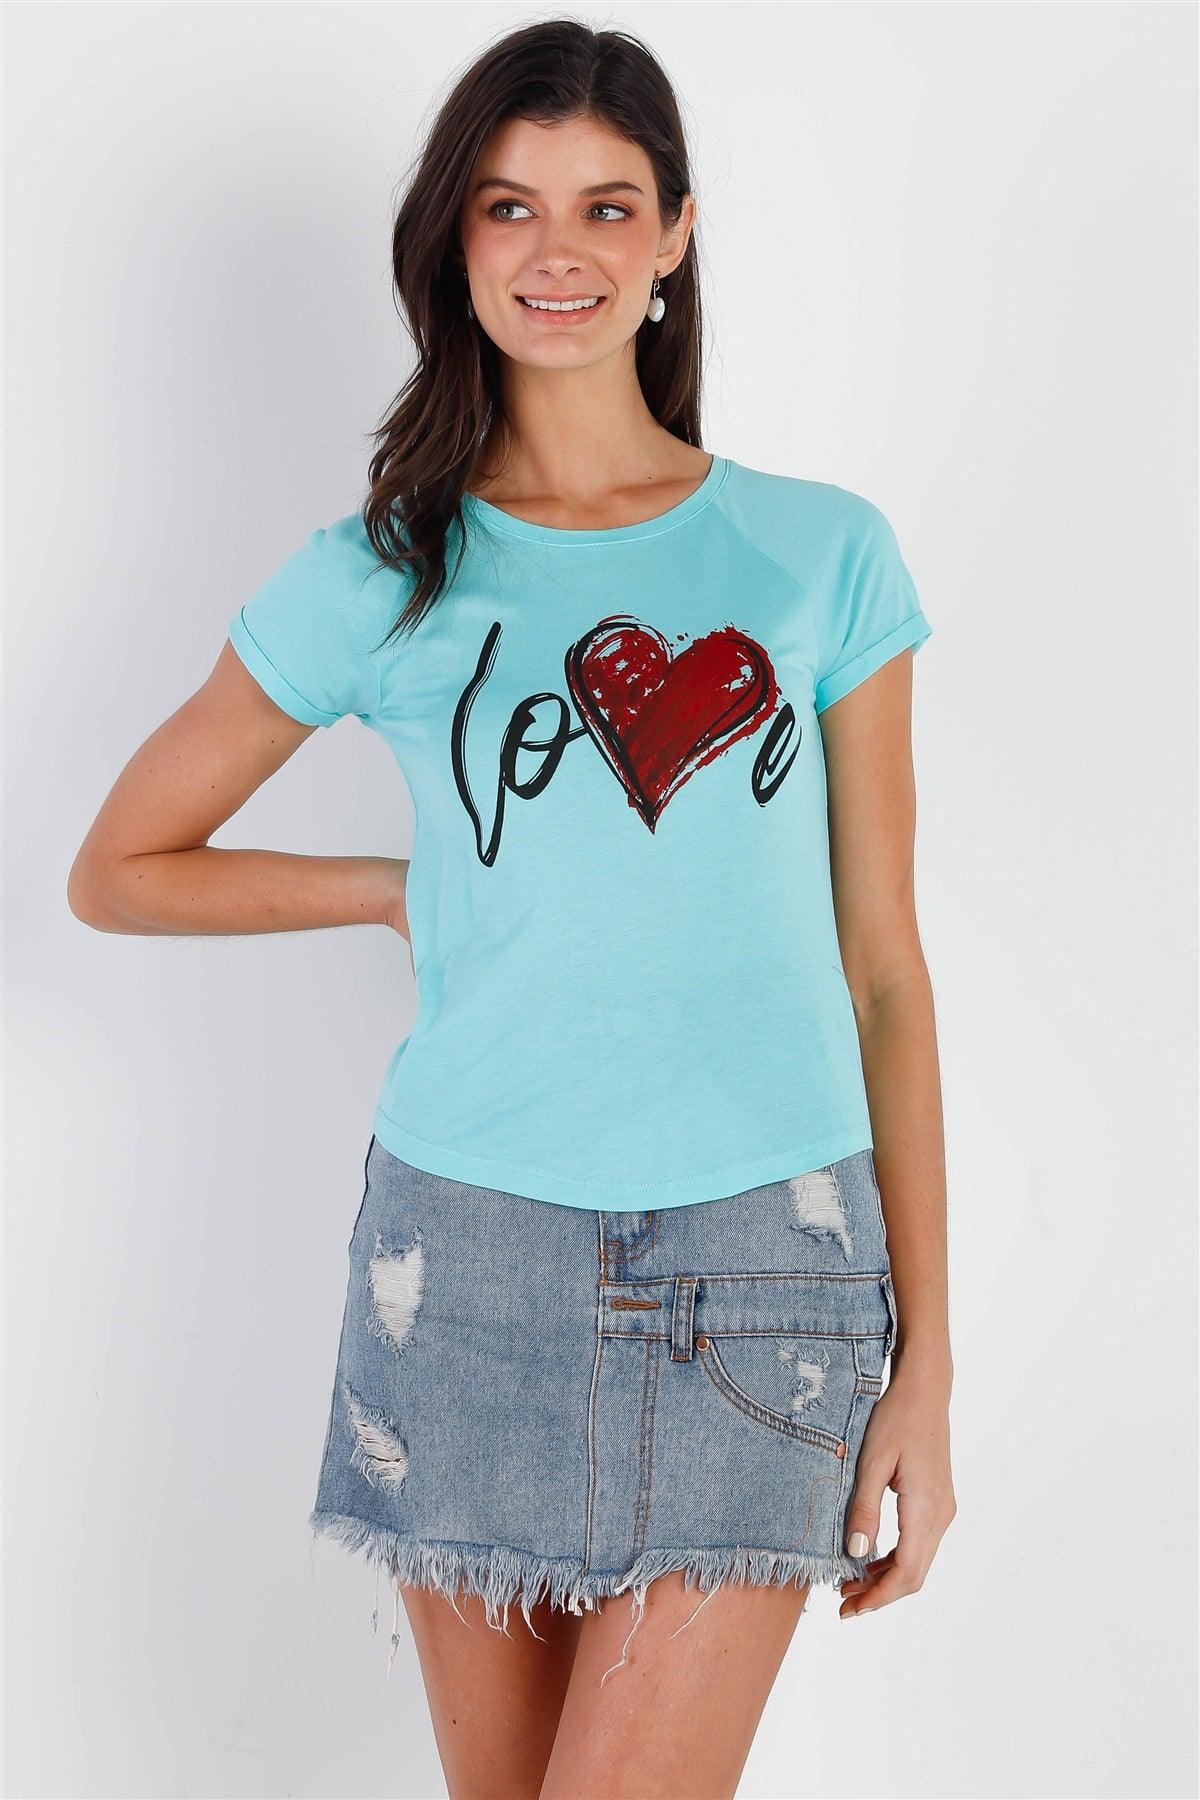 "Love" Print Mint Short Sleeve T-Shirt Top /2-2